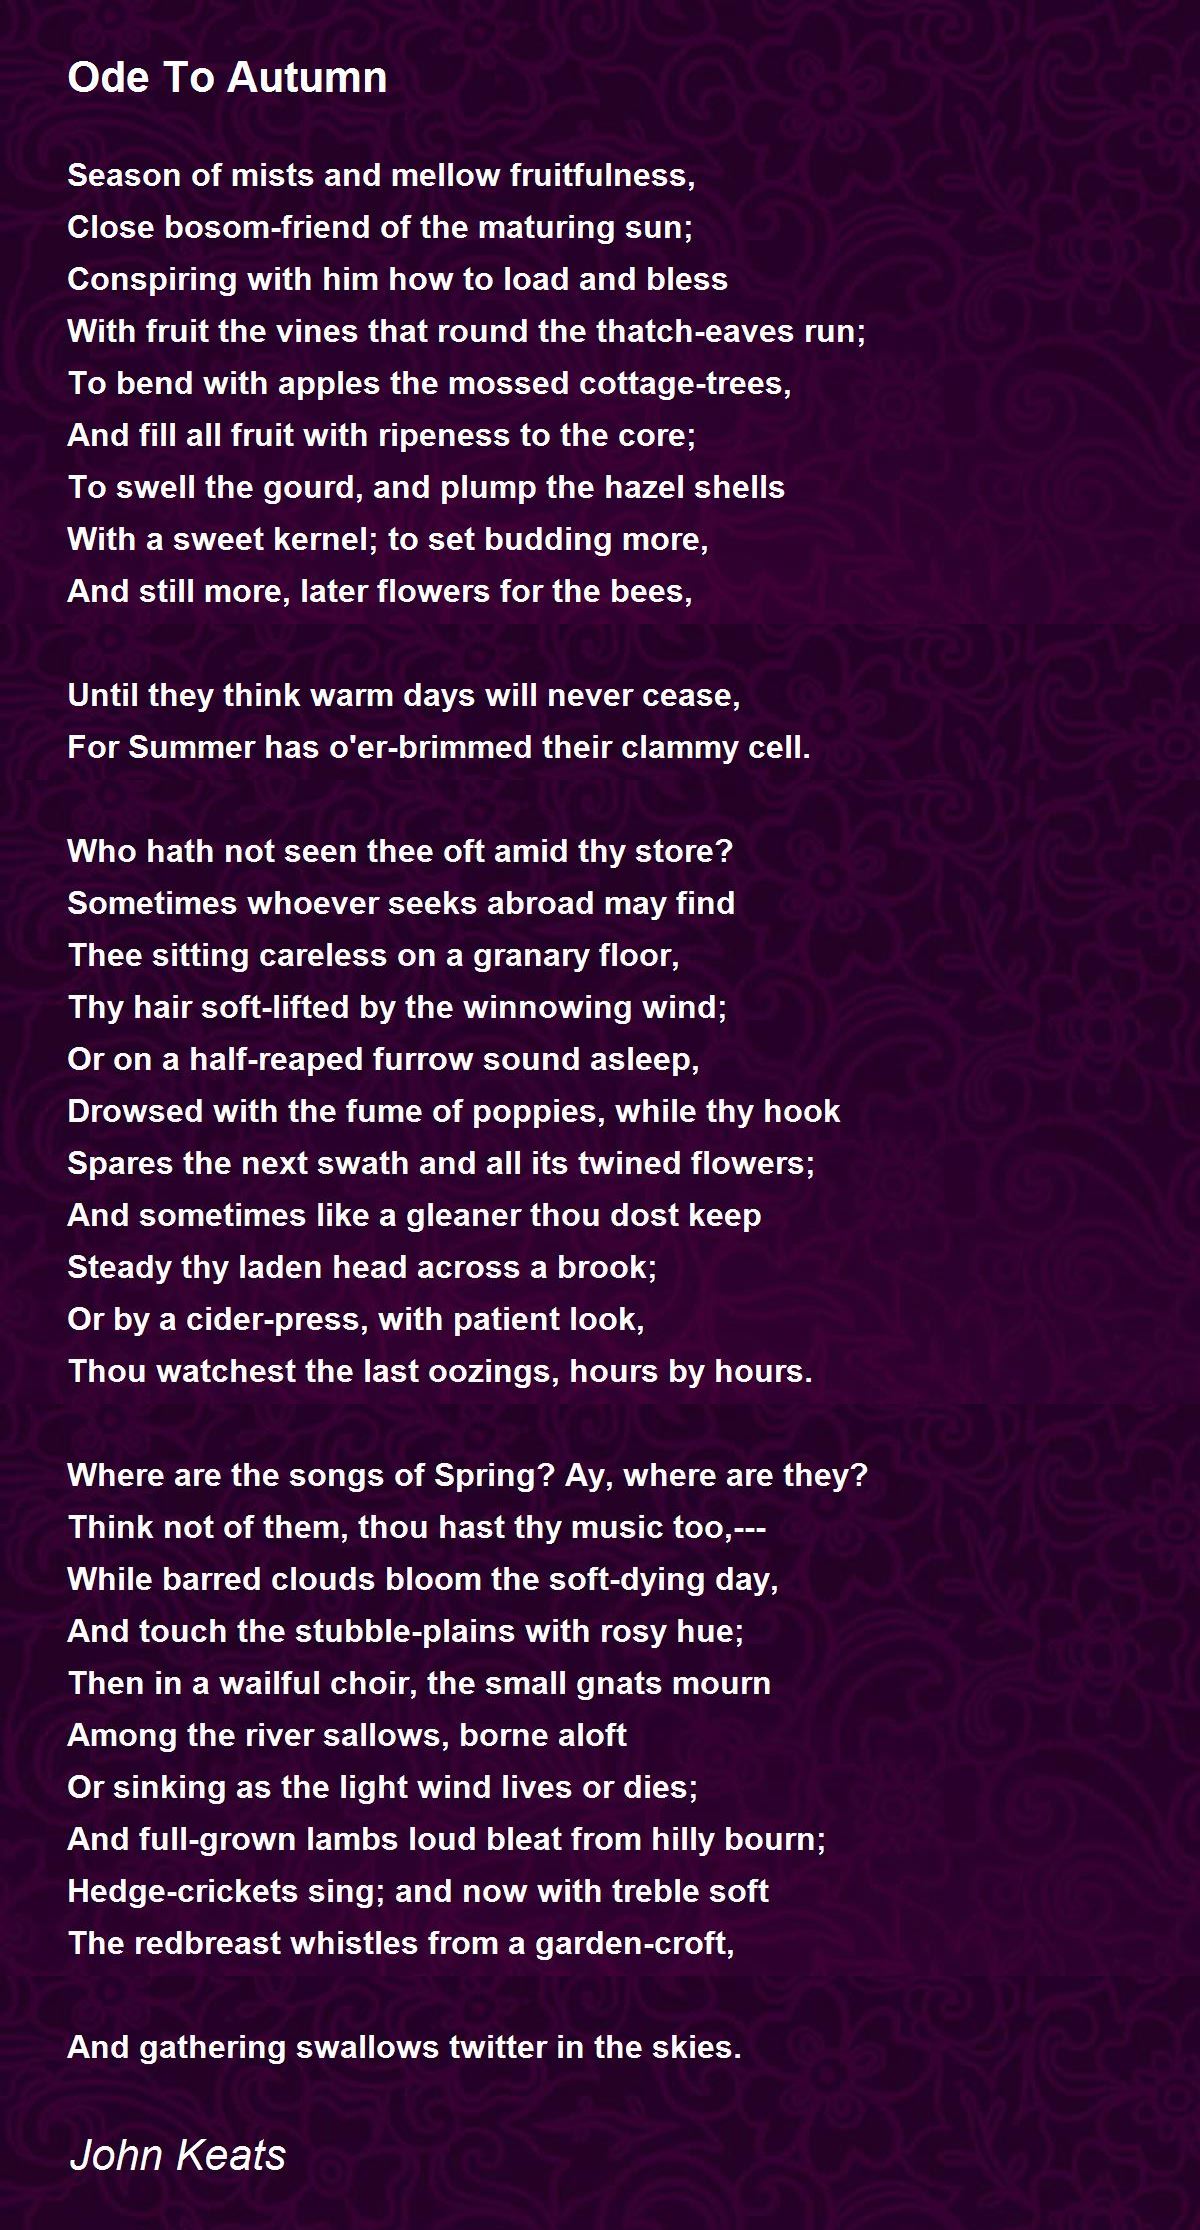 john keats poem ode to autumn